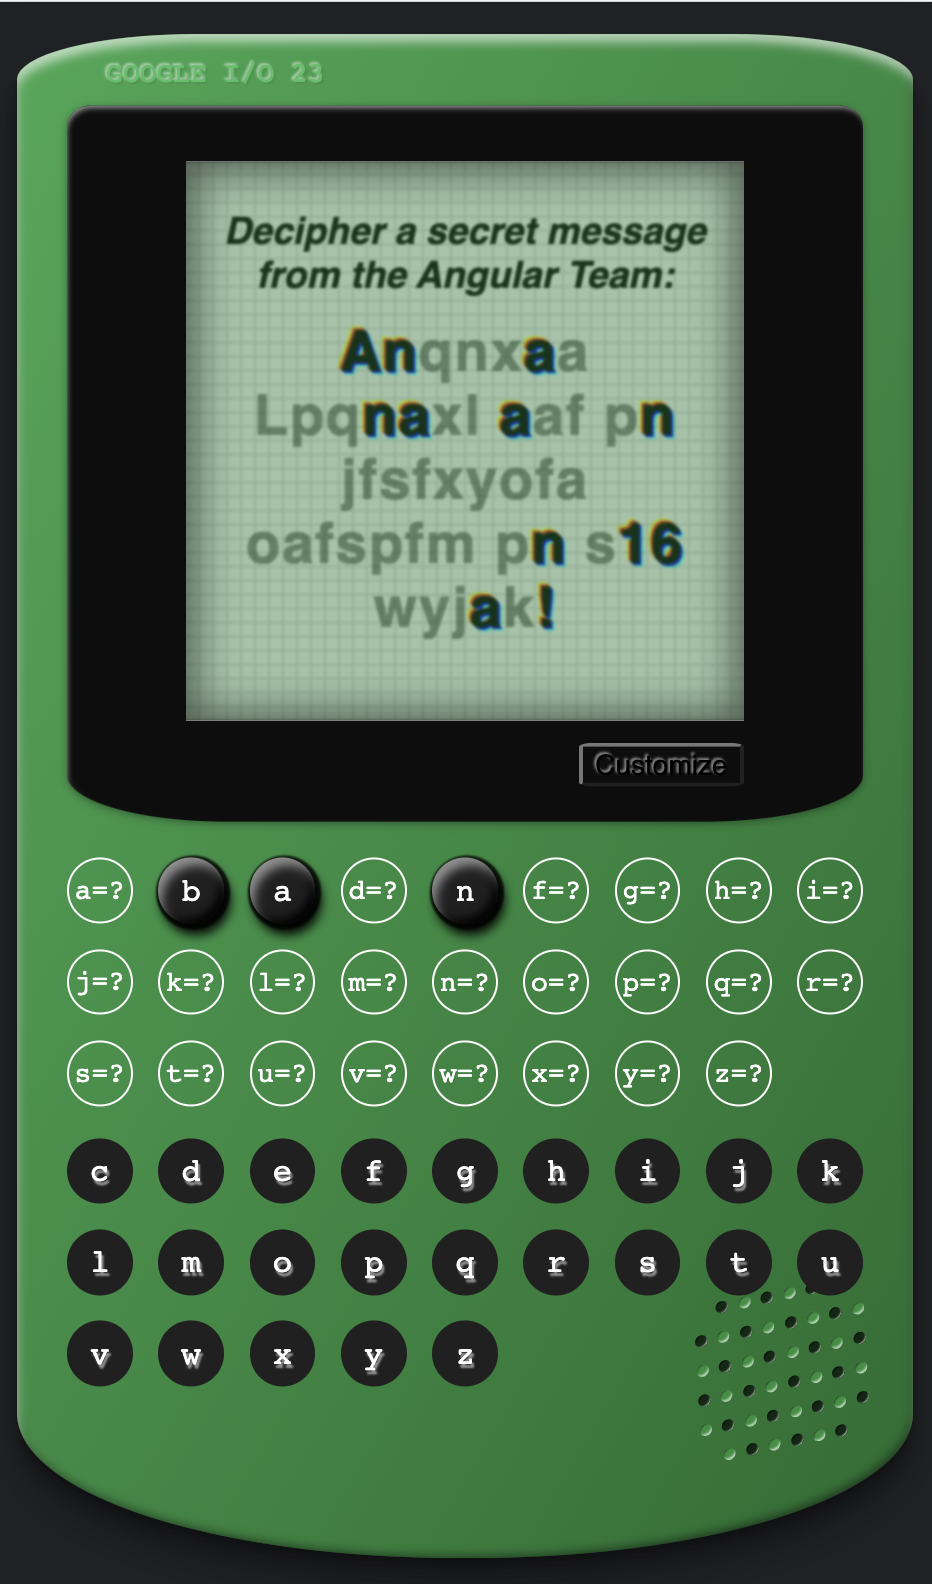 Juego de Chip Cypher al estilo de una consola de juegos verde vintage, con un mensaje oculto en la pantalla "Anqnxaa Lpcnaxl aaf pn jfafxyofa aofapfm pn a16 wyjak!"